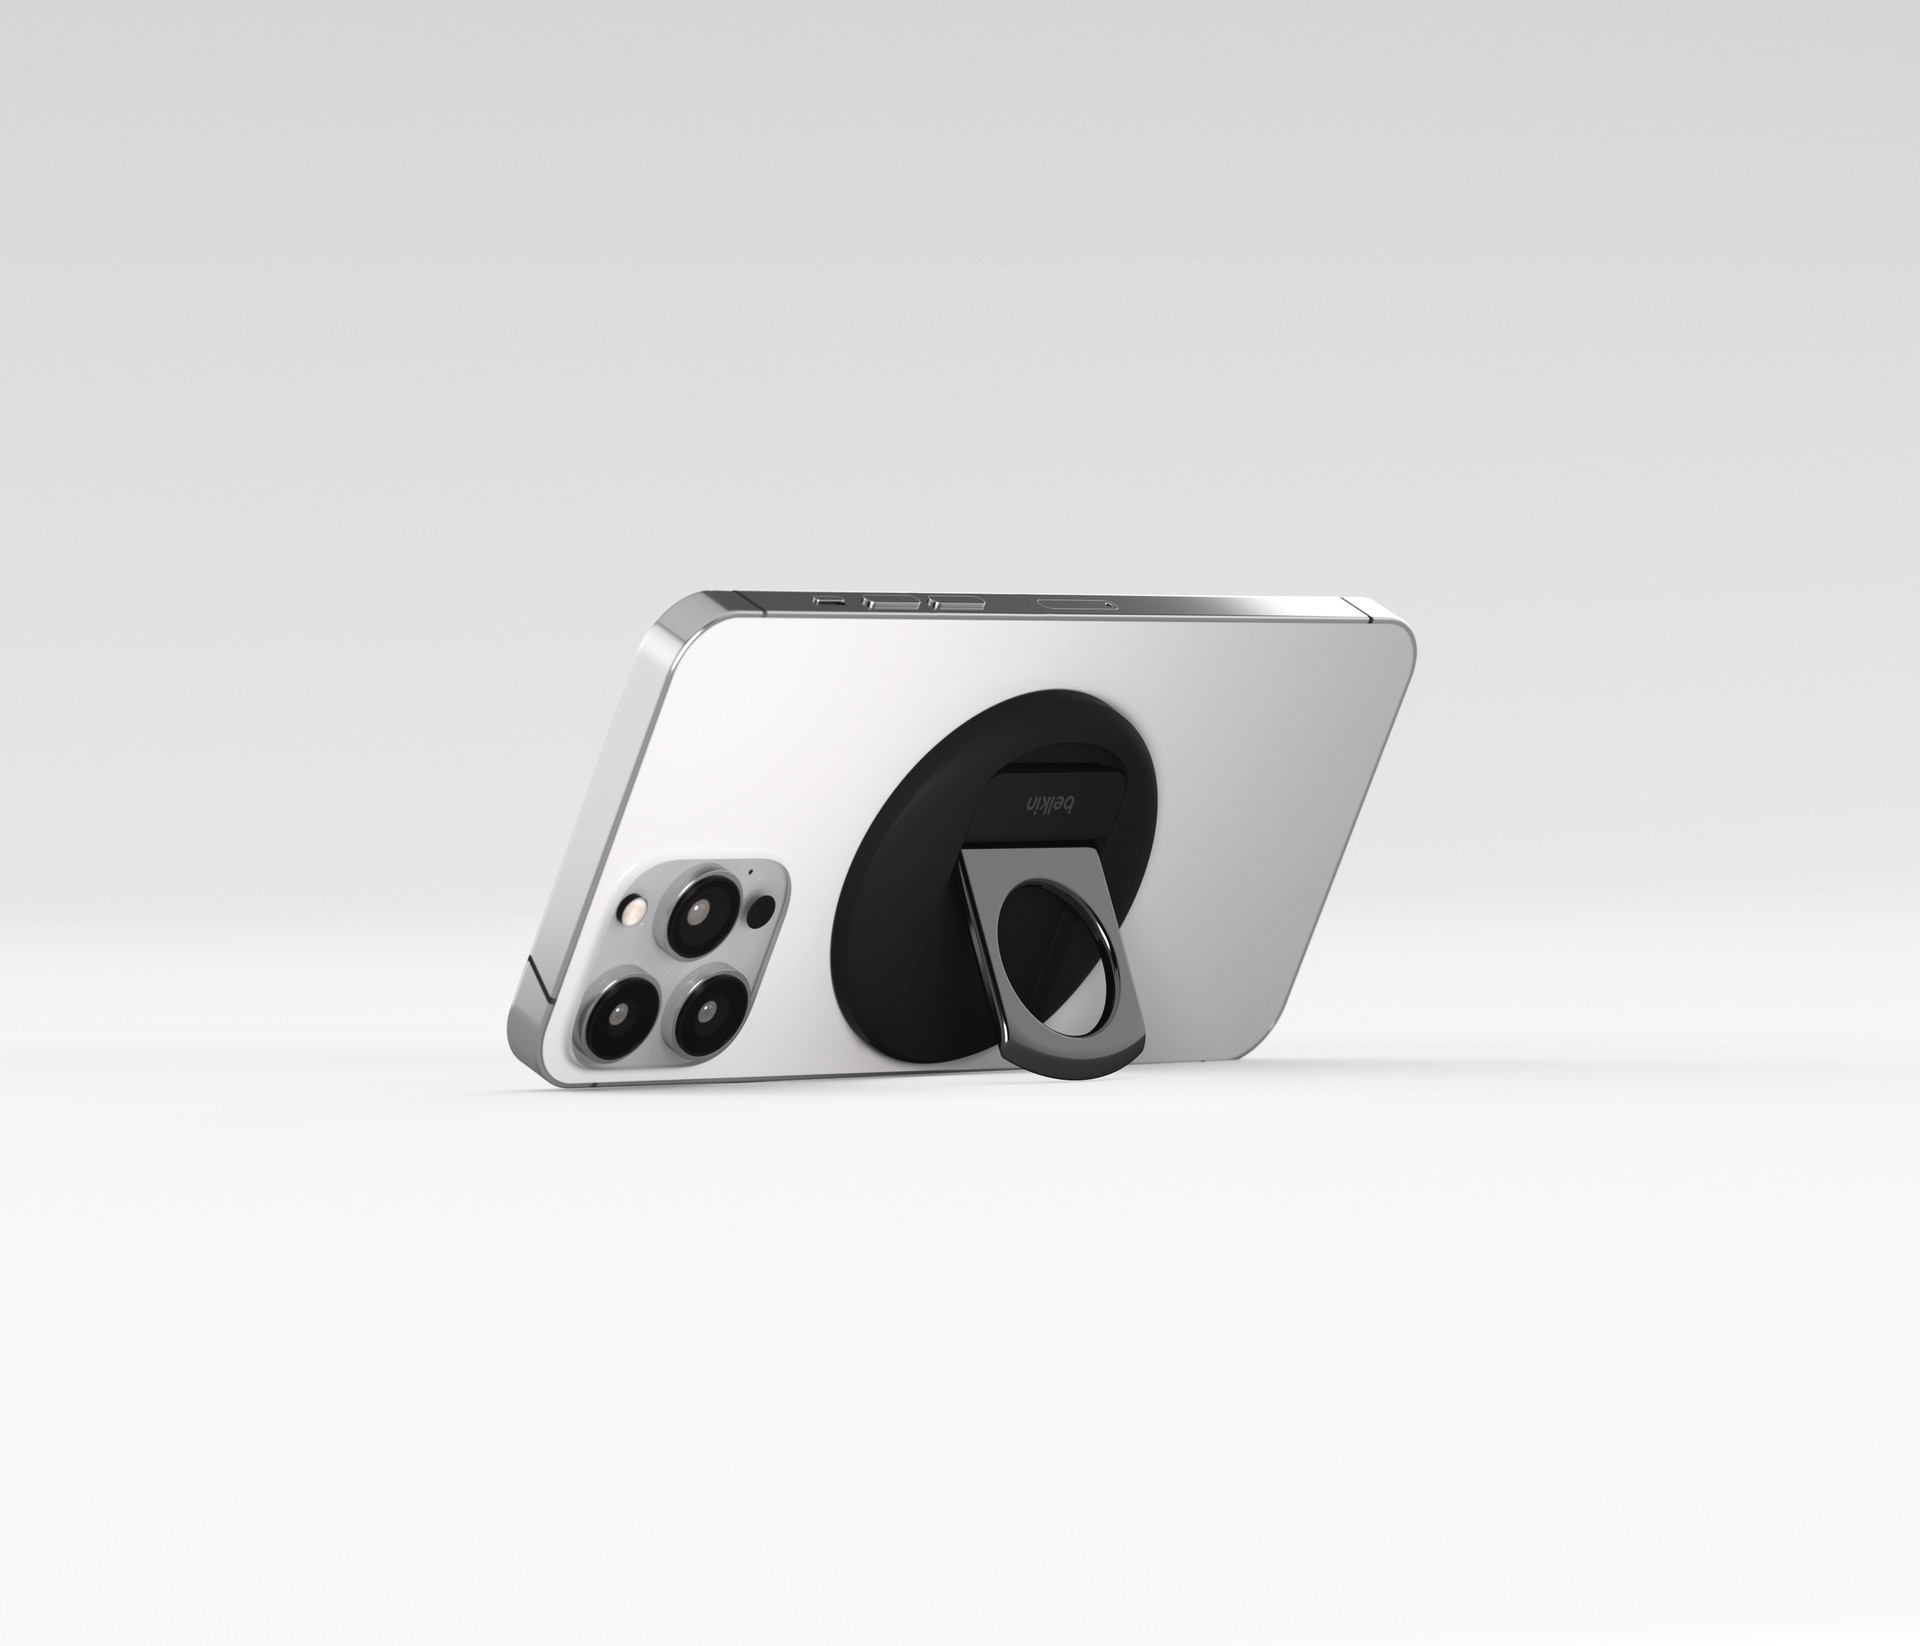 Belkin Smartphone-Halterung »iPhone Halter mit MagSafe für MacBooks«, auch als Ringgriff oder Ständer verwendbar